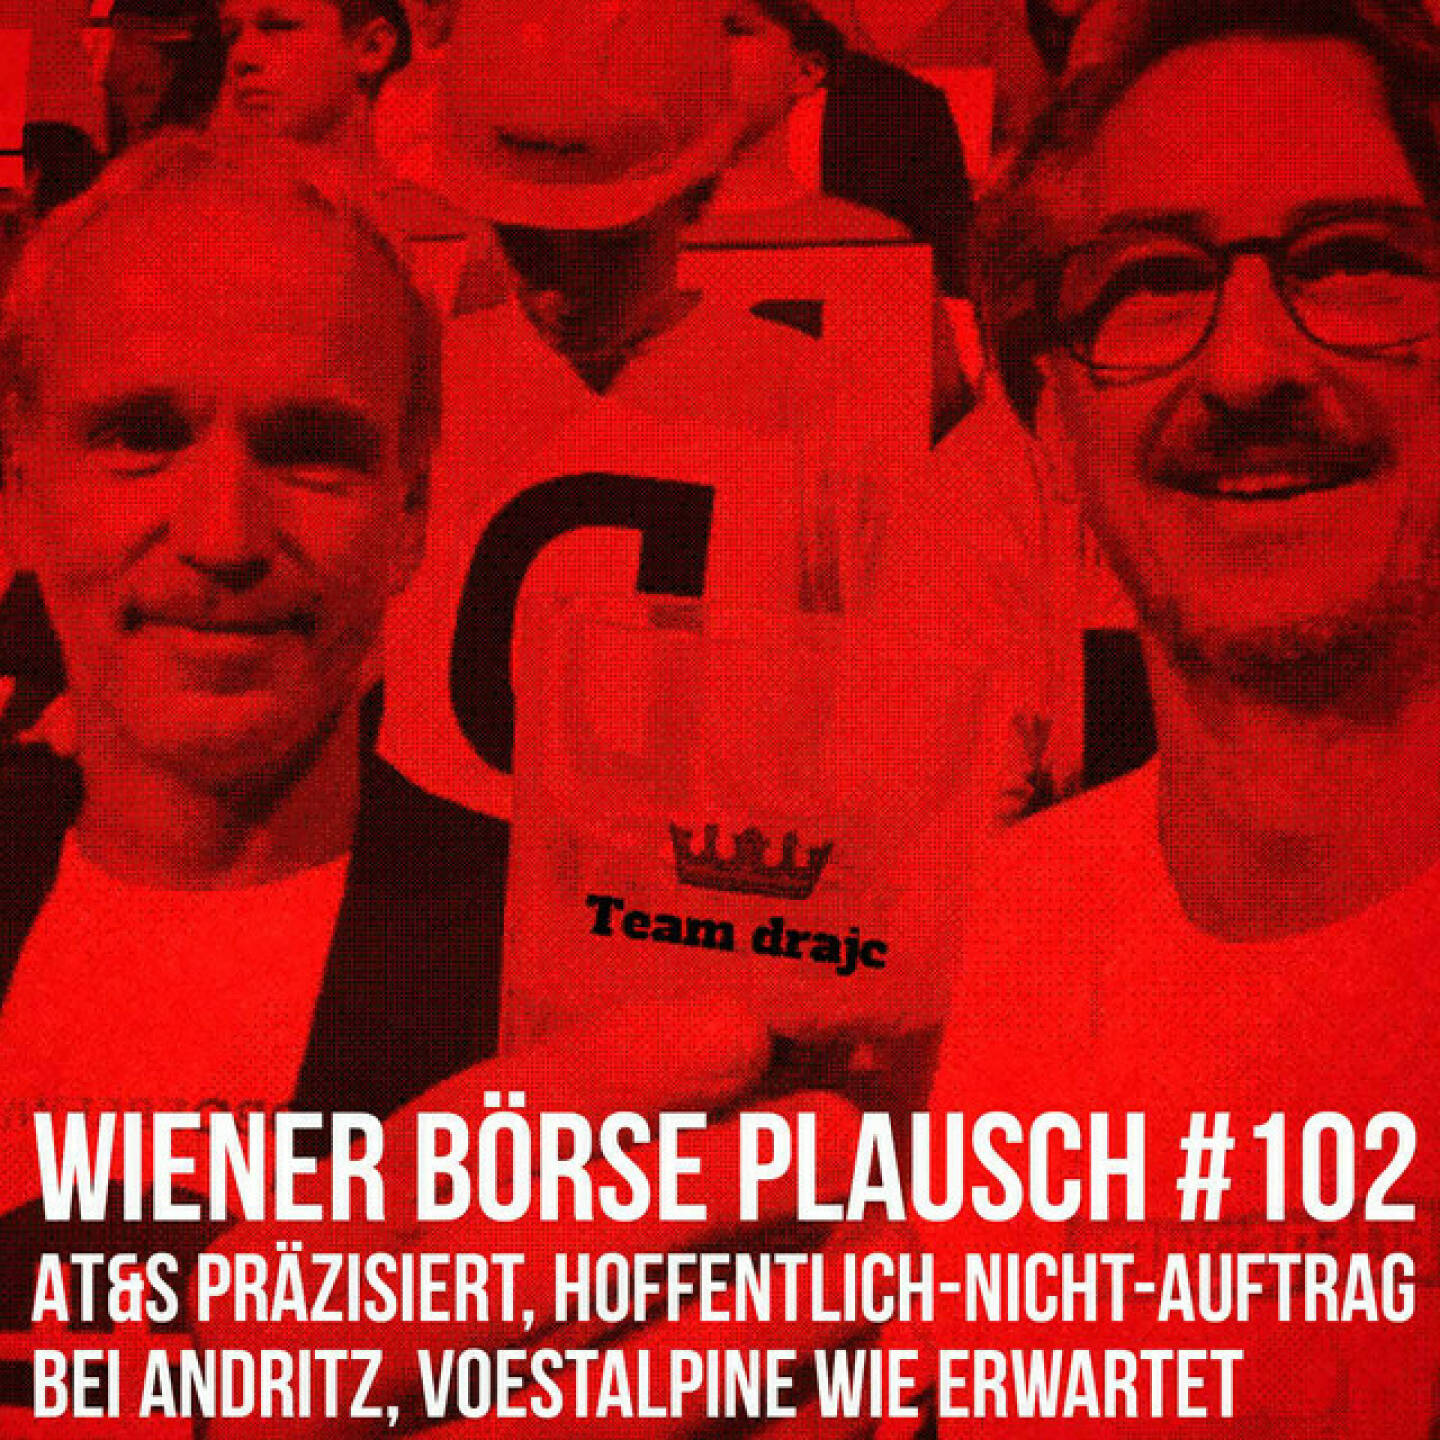 https://open.spotify.com/episode/54ZsgD1JO7bsFzBw7D7FC7
Wiener Börse Plausch #102: AT&S präzisiert, Hoffentlich-Nicht-Auftrag bei Andritz, voestalpine wie erwartet - <p>Team drajc, das sind die Börse Social Network Eigentümer Christian Drastil und Josef Chladek, hat im Wiener Börse Plausch #102 u.a. Input vom AT&amp;S-iR-Chef Philipp Gebhardt, weiters Andritz-Zitate und einen Hoffentlich-Nicht-Auftrag bei Andritz, Verbund vs. Lenzing die Nächste, Semperit, voestalpine und wie wärs, wenn Unternehmen mal Banken analysieren würden.</p><br/><p>Die 2022er-Folgen vom Wiener Börse Plausch sind präsentiert von Wienerberger, CEO Heimo Scheuch hat sich im Q4 ebenfalls unter die Podcaster gemischt: <a href=https://open.spotify.com/show/5D4Gz8bpAYNAI6tg7H695E rel=nofollow>https://open.spotify.com/show/5D4Gz8bpAYNAI6tg7H695E</a> . Co-Presenter im März ist Trockeneis-online.com, siehe auch die überarbeitete <a href=https://boersenradio.at rel=nofollow>https://boersenradio.at</a><br/>Der Theme-Song, der eigentlich schon aus dem Jänner stammt und spontan von der Rosinger Group supportet wurde: Sound &amp; Lyrics unter <a href=https://boersenradio.at/page/podcast/2734/ rel=nofollow>https://boersenradio.at/page/podcast/2734/</a> .</p><br/><p>Risikohinweis: Die hier veröffentlichten Gedanken sind weder als Empfehlung noch als ein Angebot oder eine Aufforderung zum An- oder Verkauf von Finanzinstrumenten zu verstehen und sollen auch nicht so verstanden werden. Sie stellen lediglich die persönliche Meinung der Podcastmacher dar. Der Handel mit Finanzprodukten unterliegt einem Risiko. Sie können Ihr eingesetztes Kapital verlieren.</p>